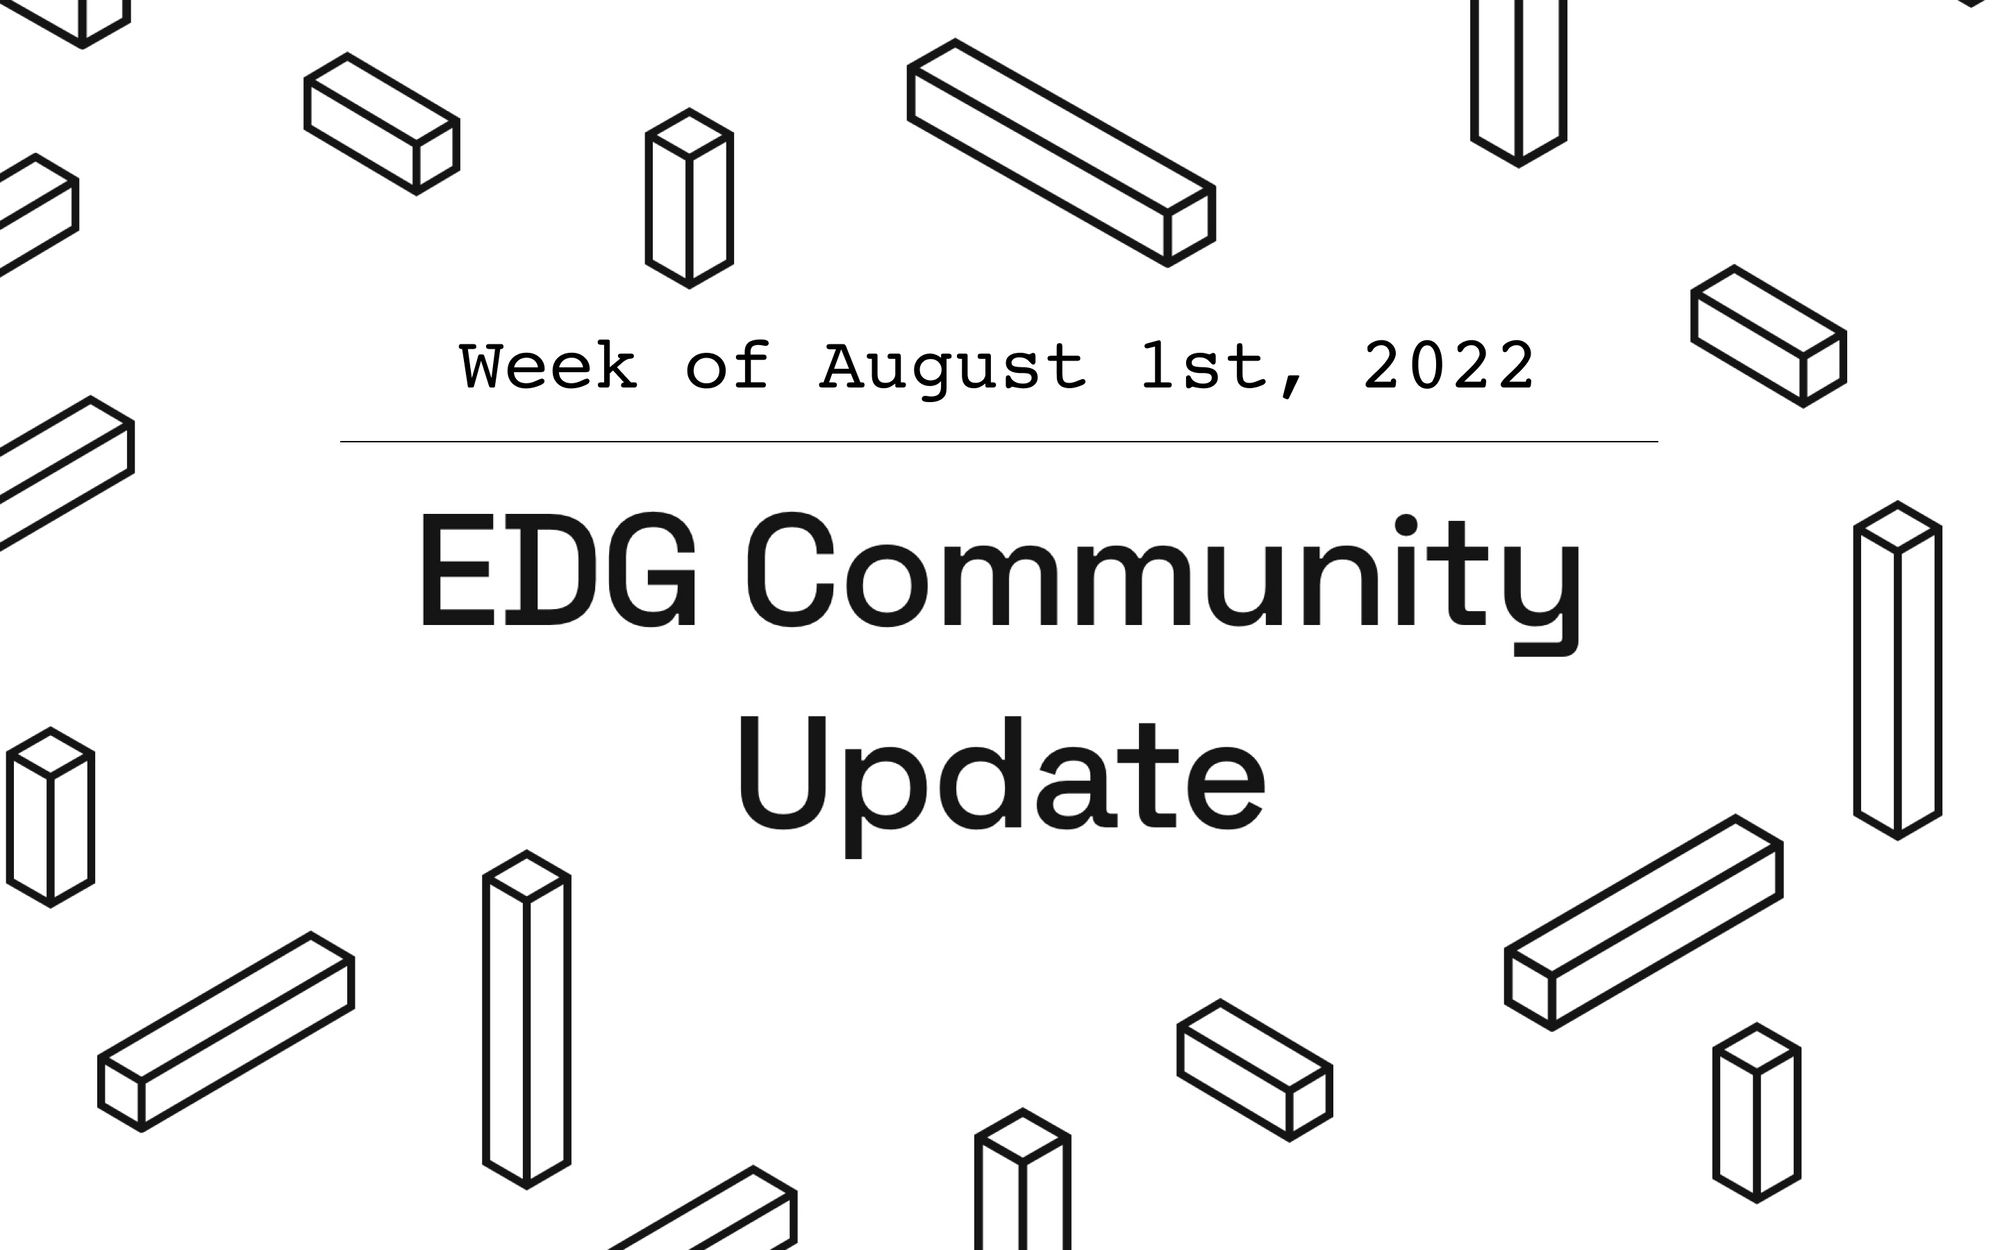 EDG Community Update: Week of August 1st, 2022